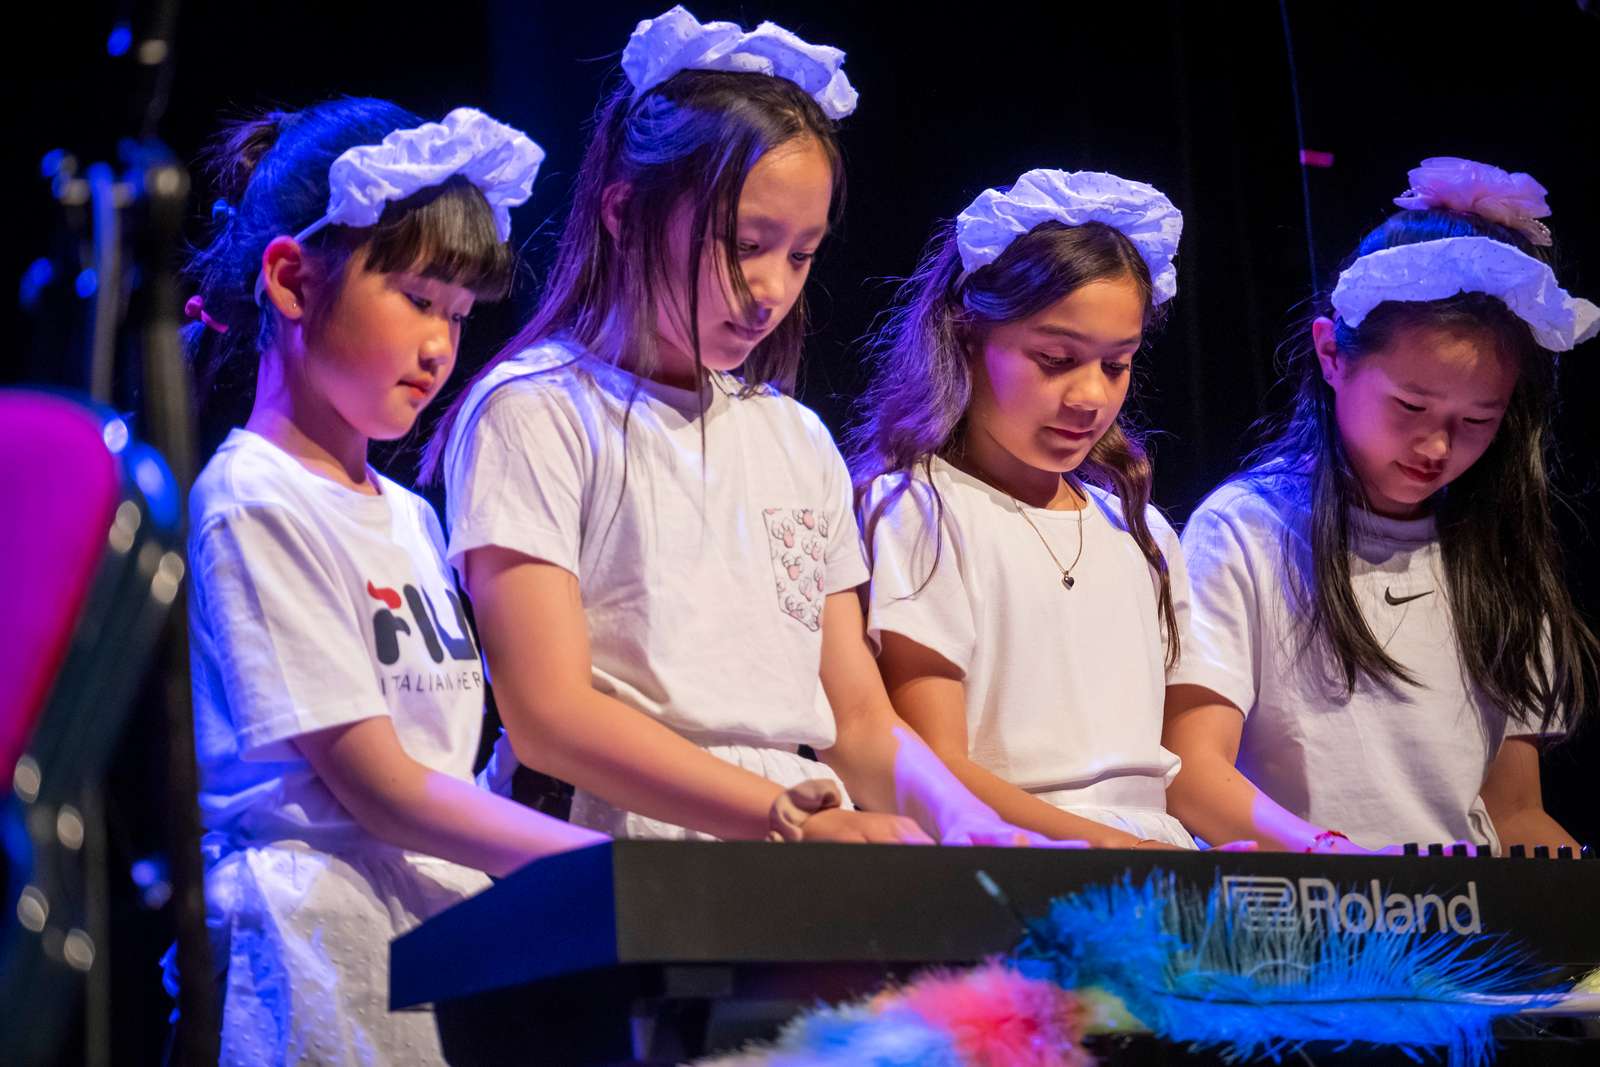 Fire små piger klædt ud som rengøringspersonale spiller firhændigt klaver til koncert